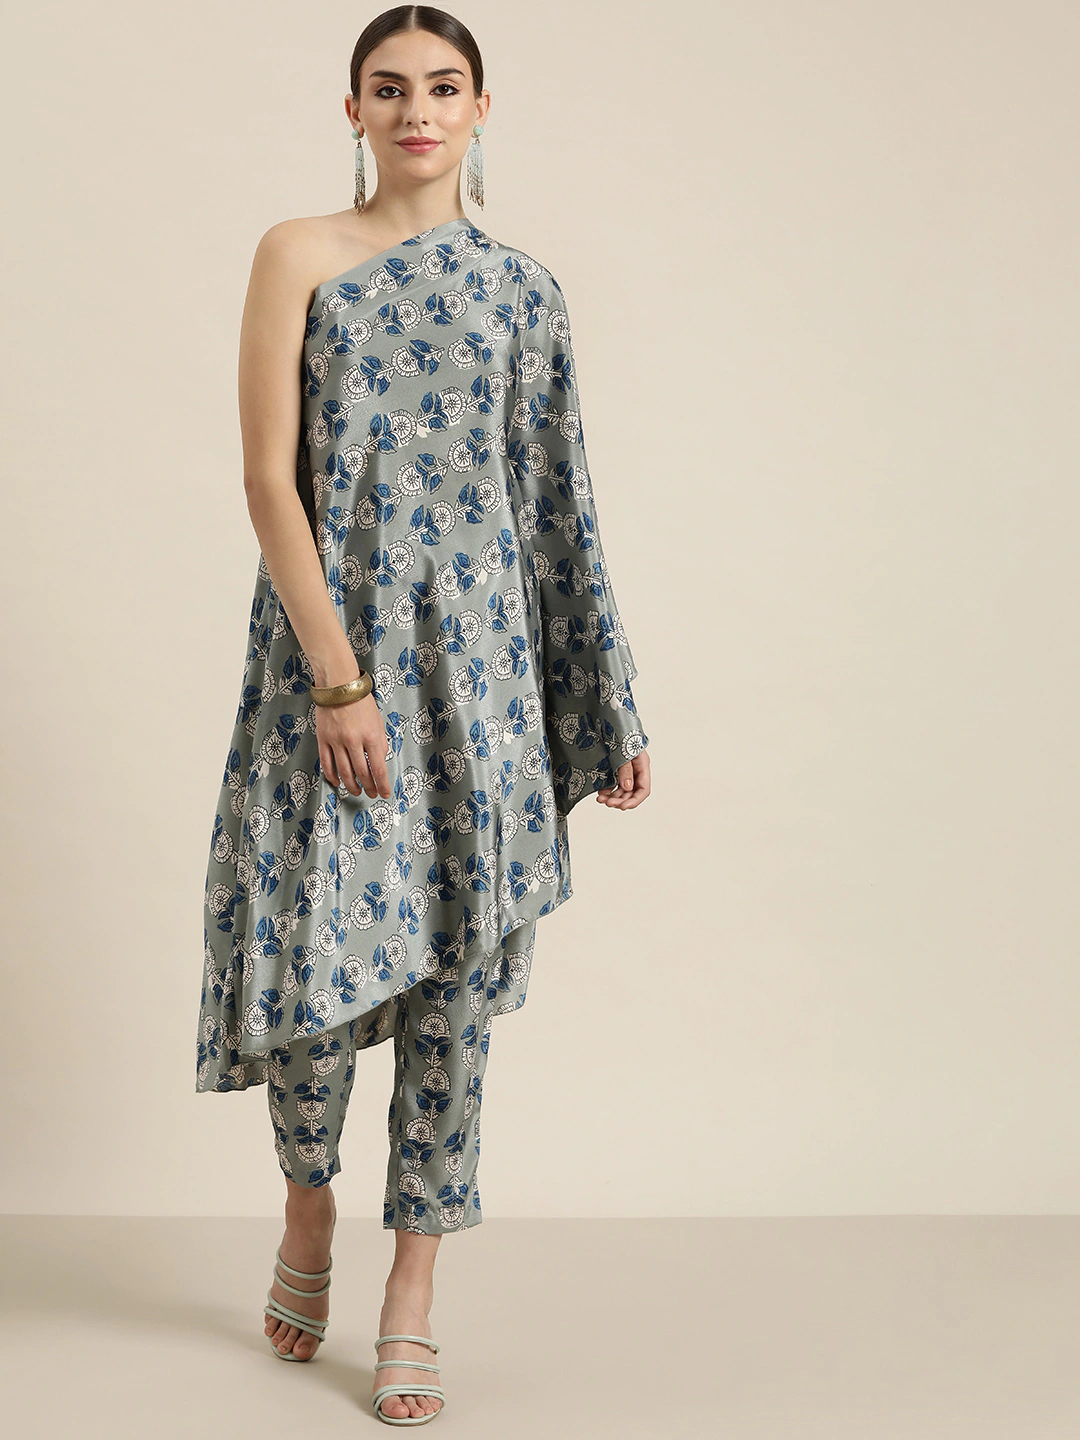 Buy online Notch Neck Floral Kaftan Dress from western wear for